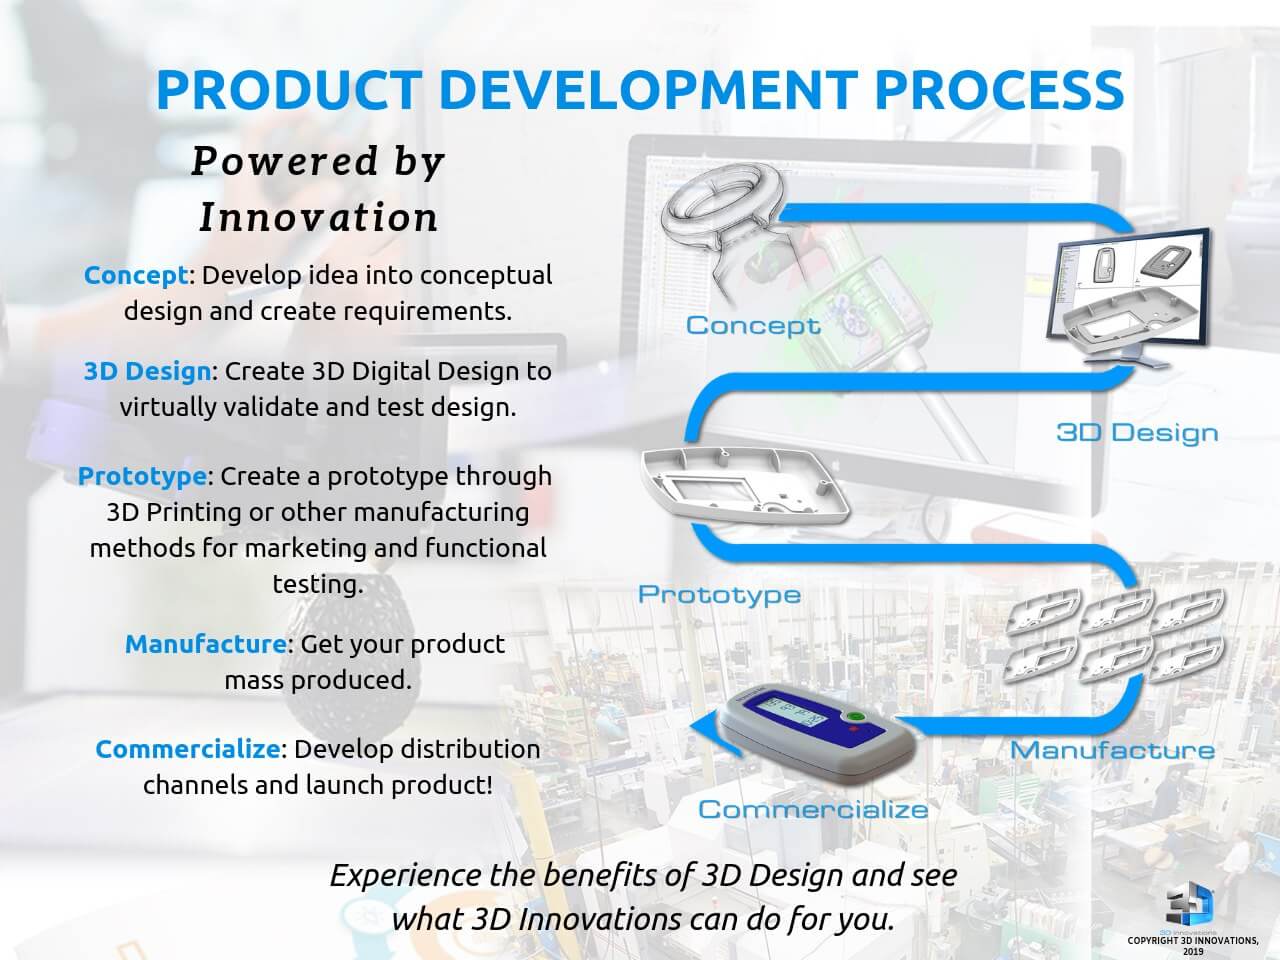 Product development basics for first-time hardware entrepreneurs.